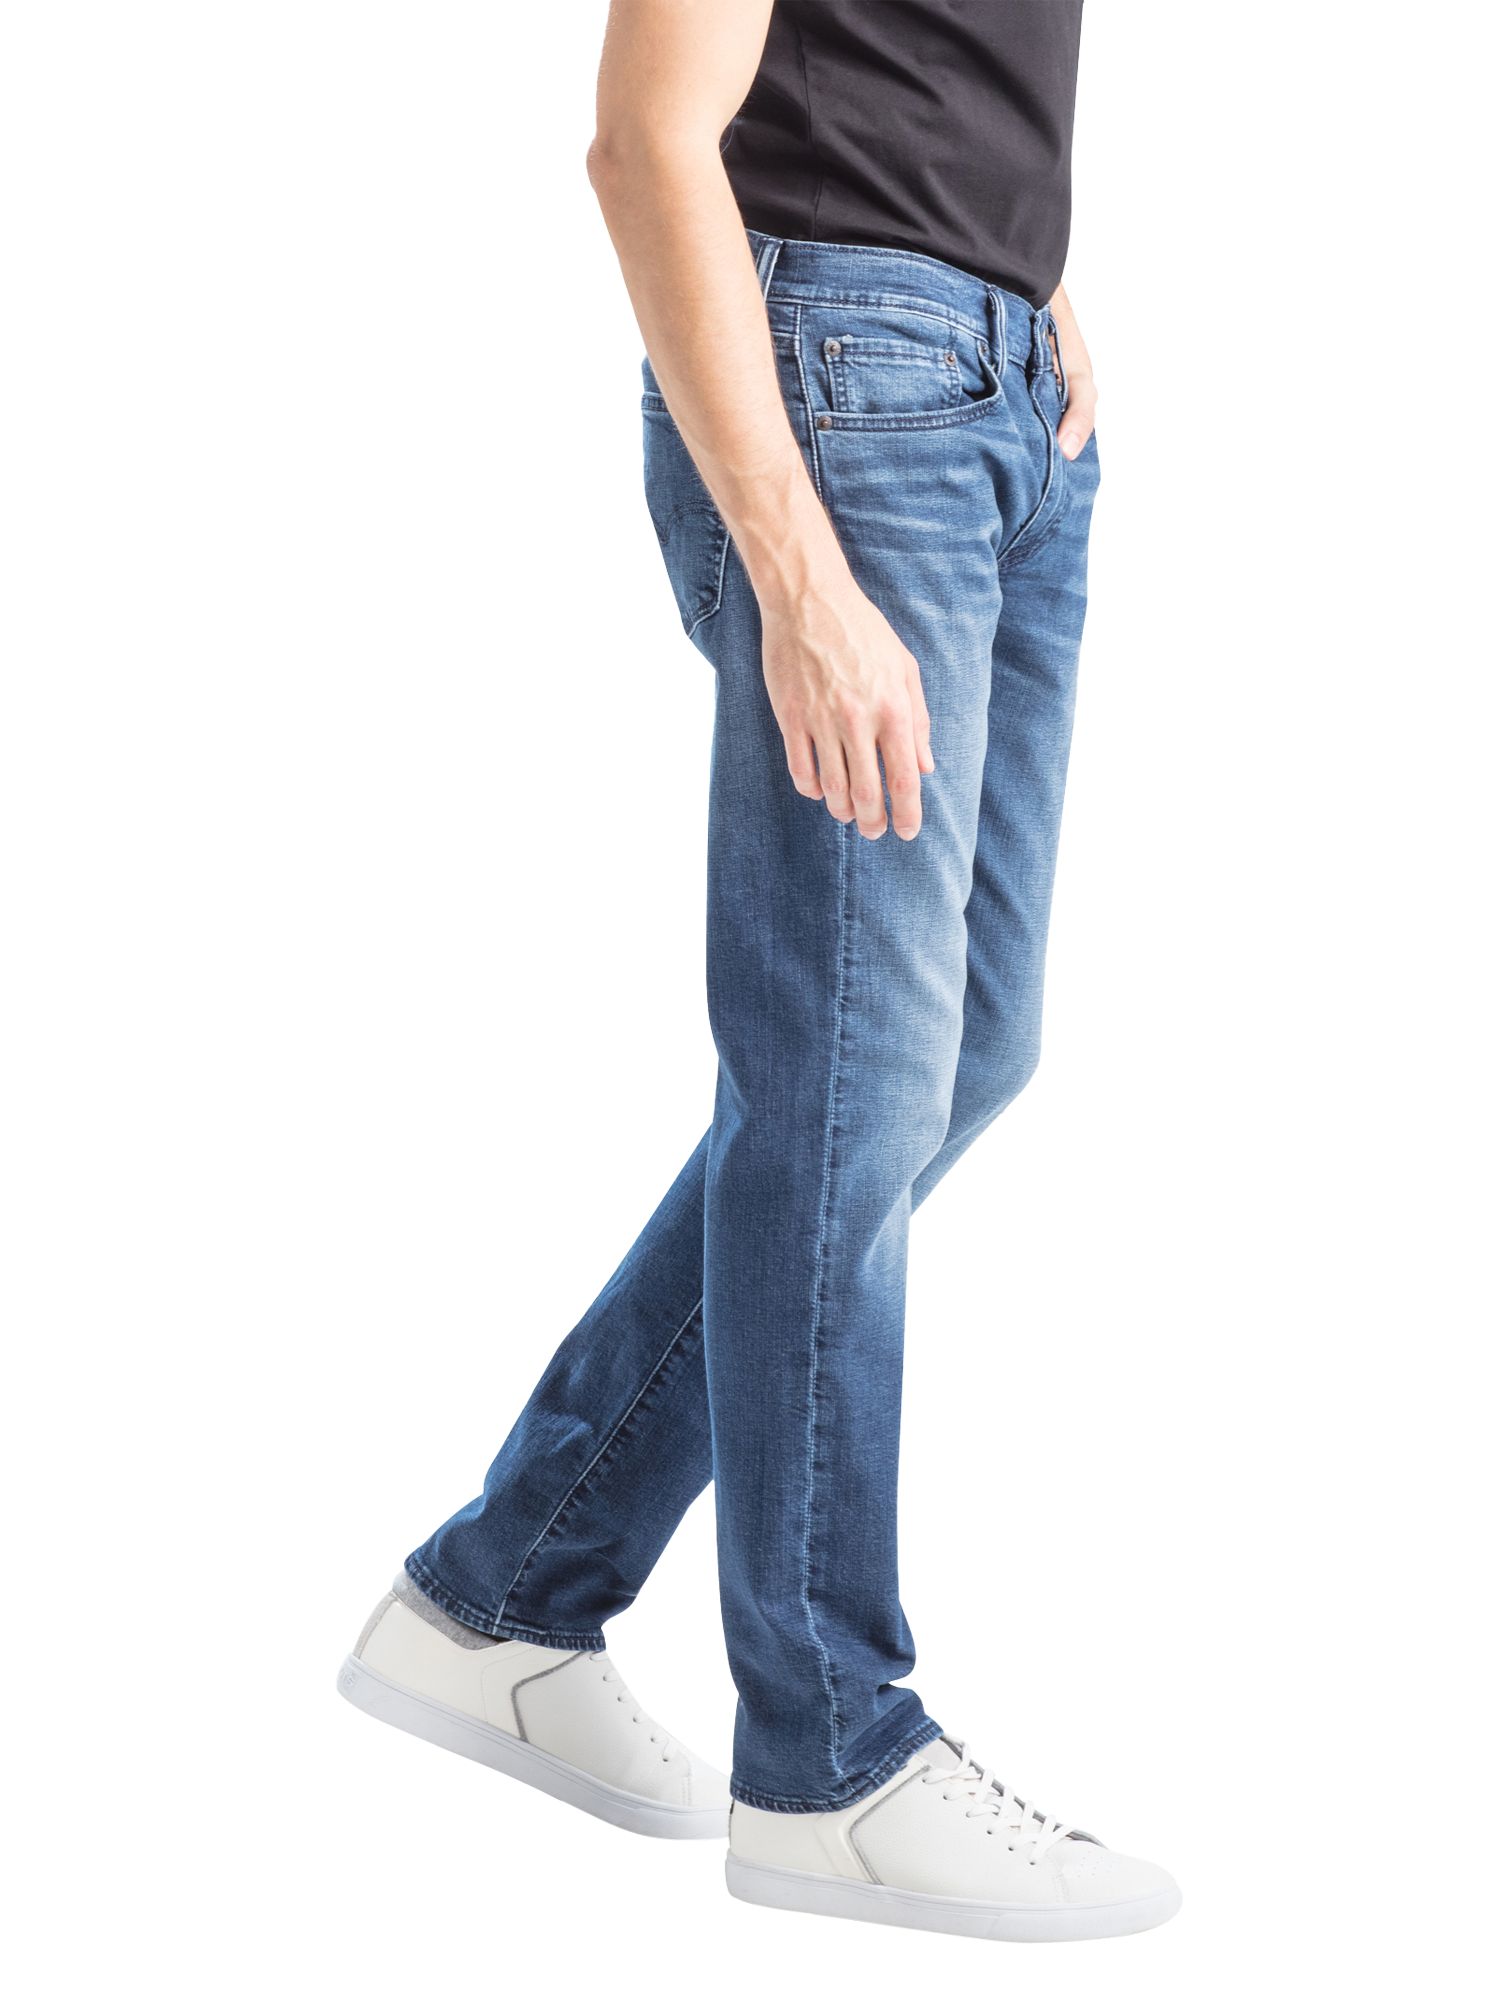 john lewis 511 jeans